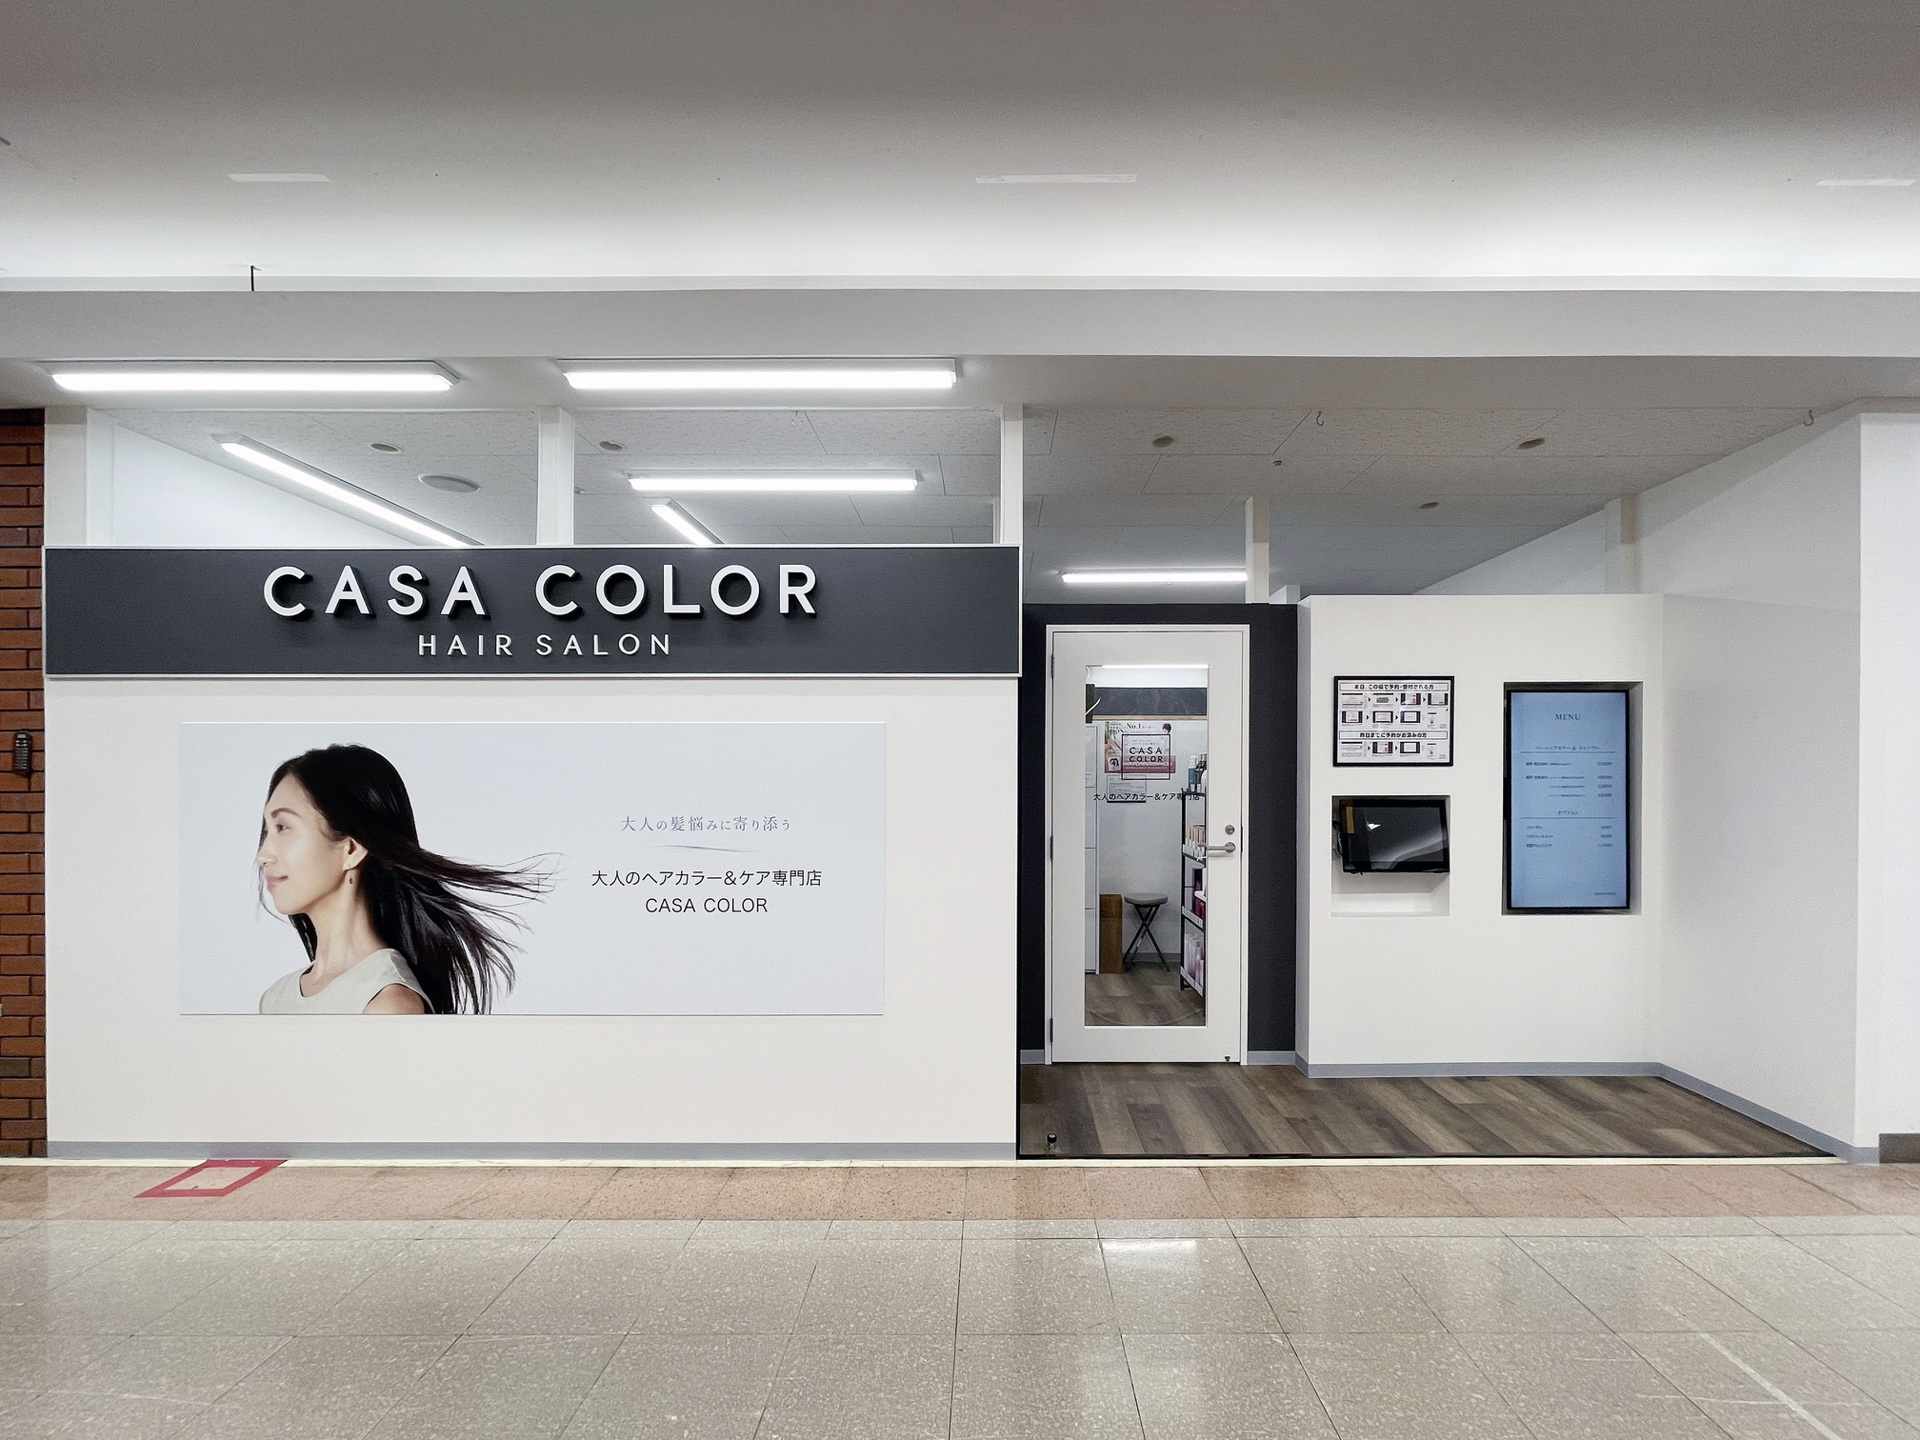 ヘアカラー専門店 CASA COLOR MEGAドン・キホーテUNY横浜大口店 店舗イメージ1